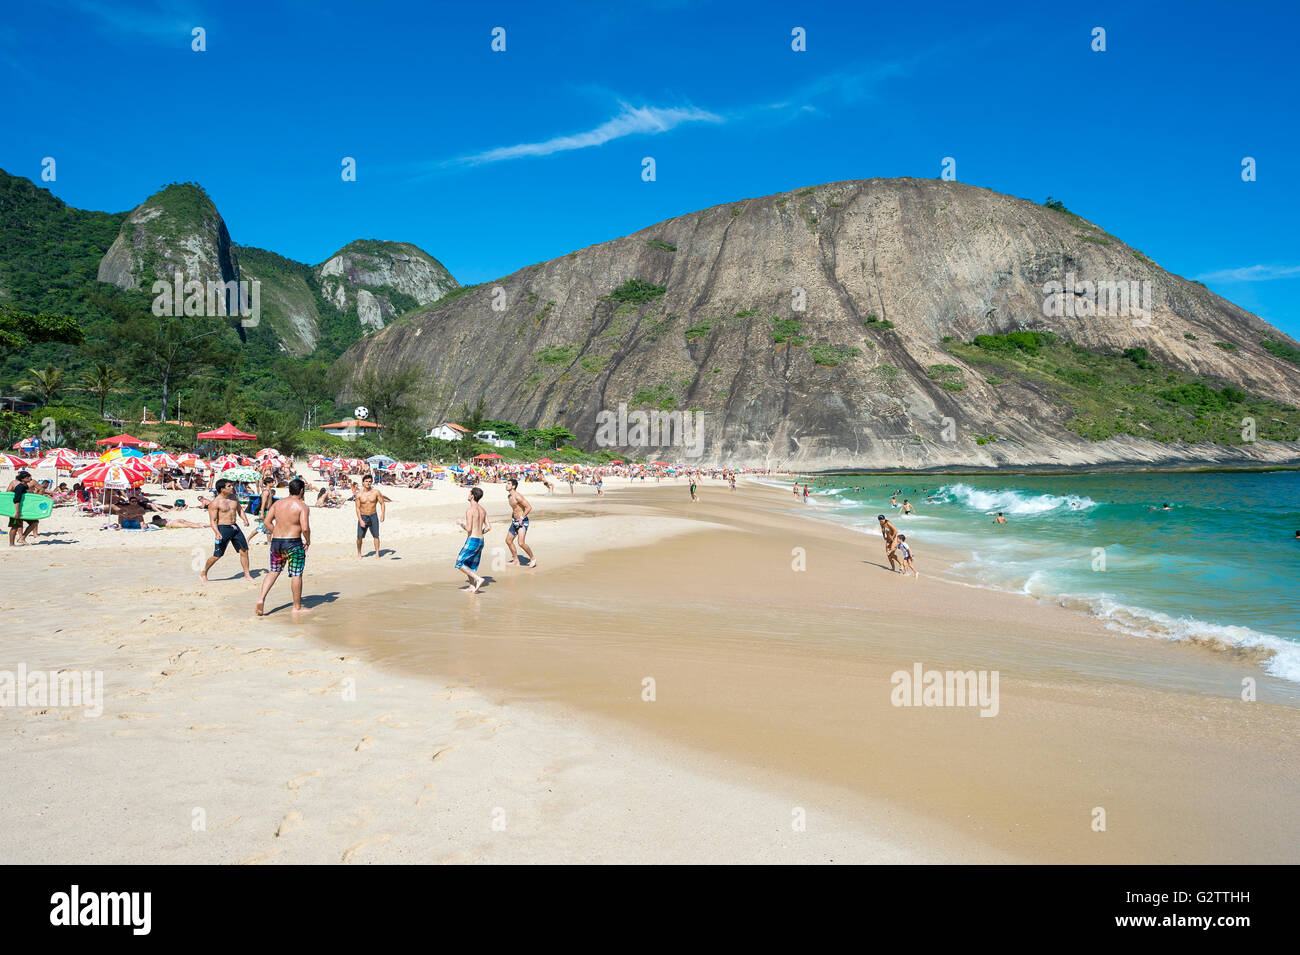 RIO DE JANEIRO - OCTOBER 31, 2015: Young Brazilians play altinho beach football on the shore of Itacoatiara Beach. Stock Photo